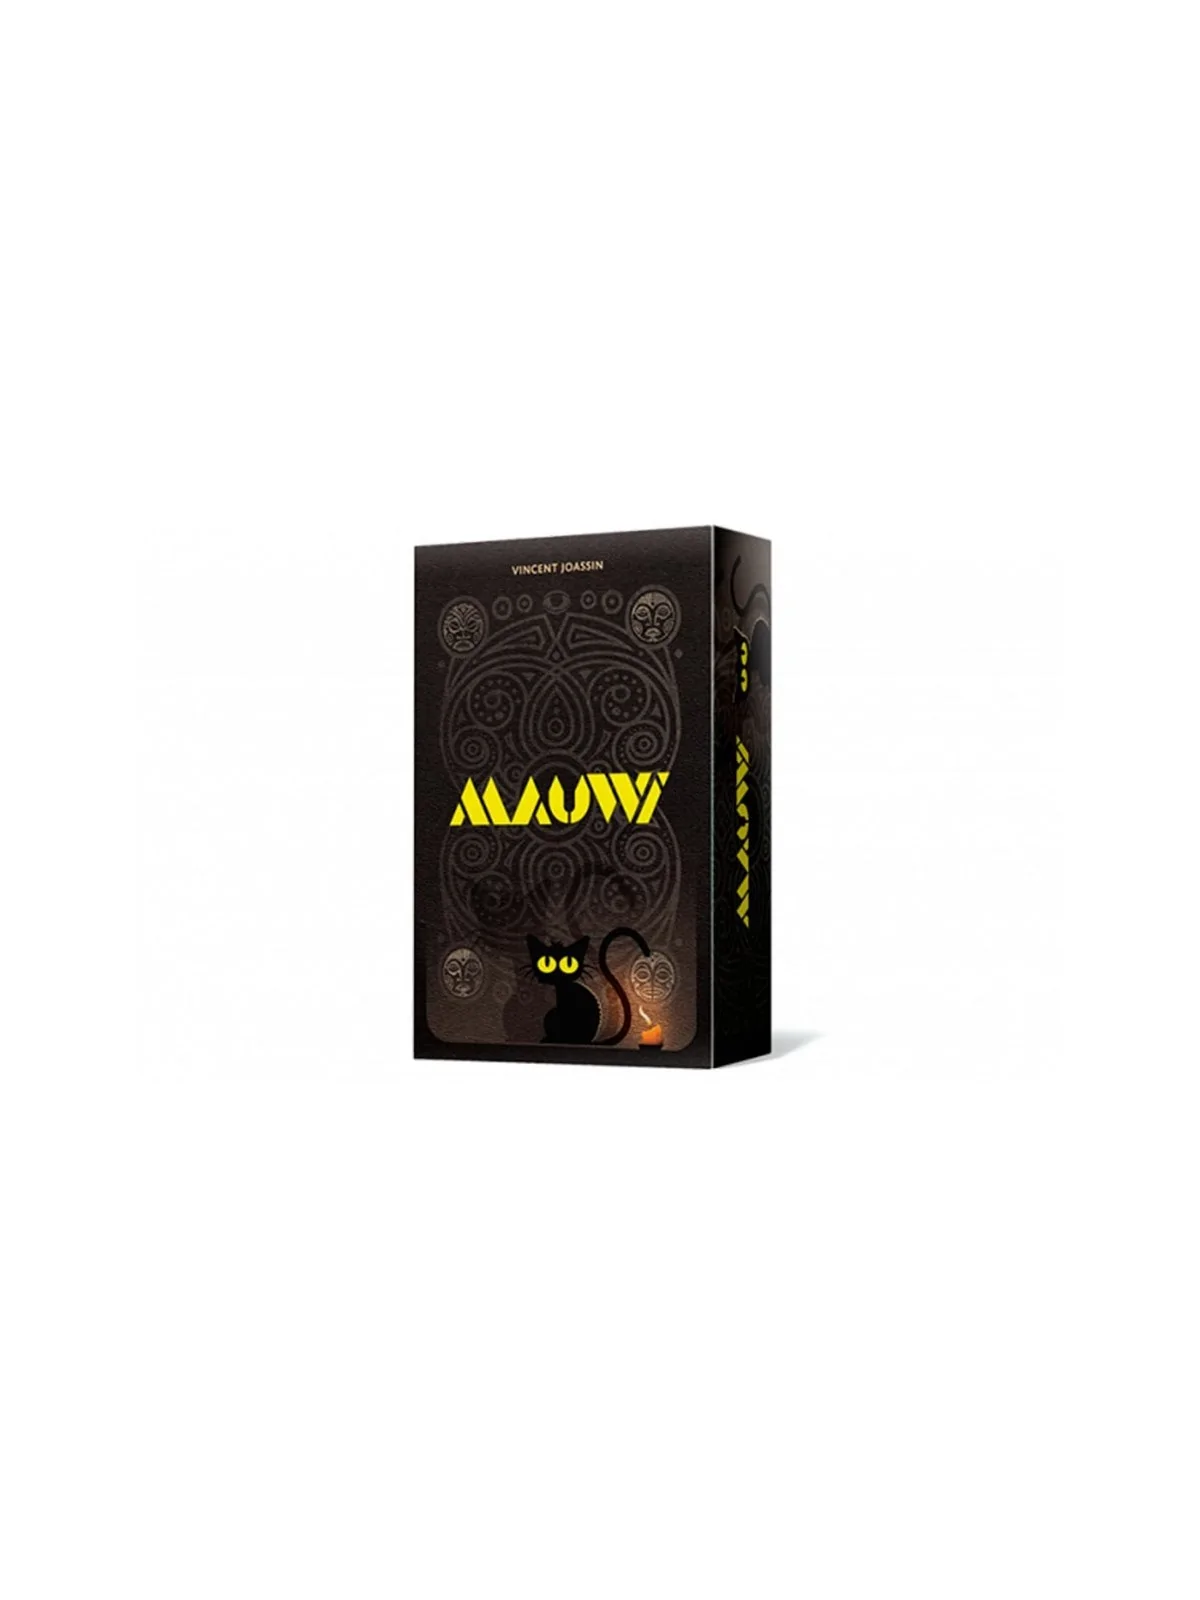 Comprar Mauwi barato al mejor precio 13,49 € de Asmodee